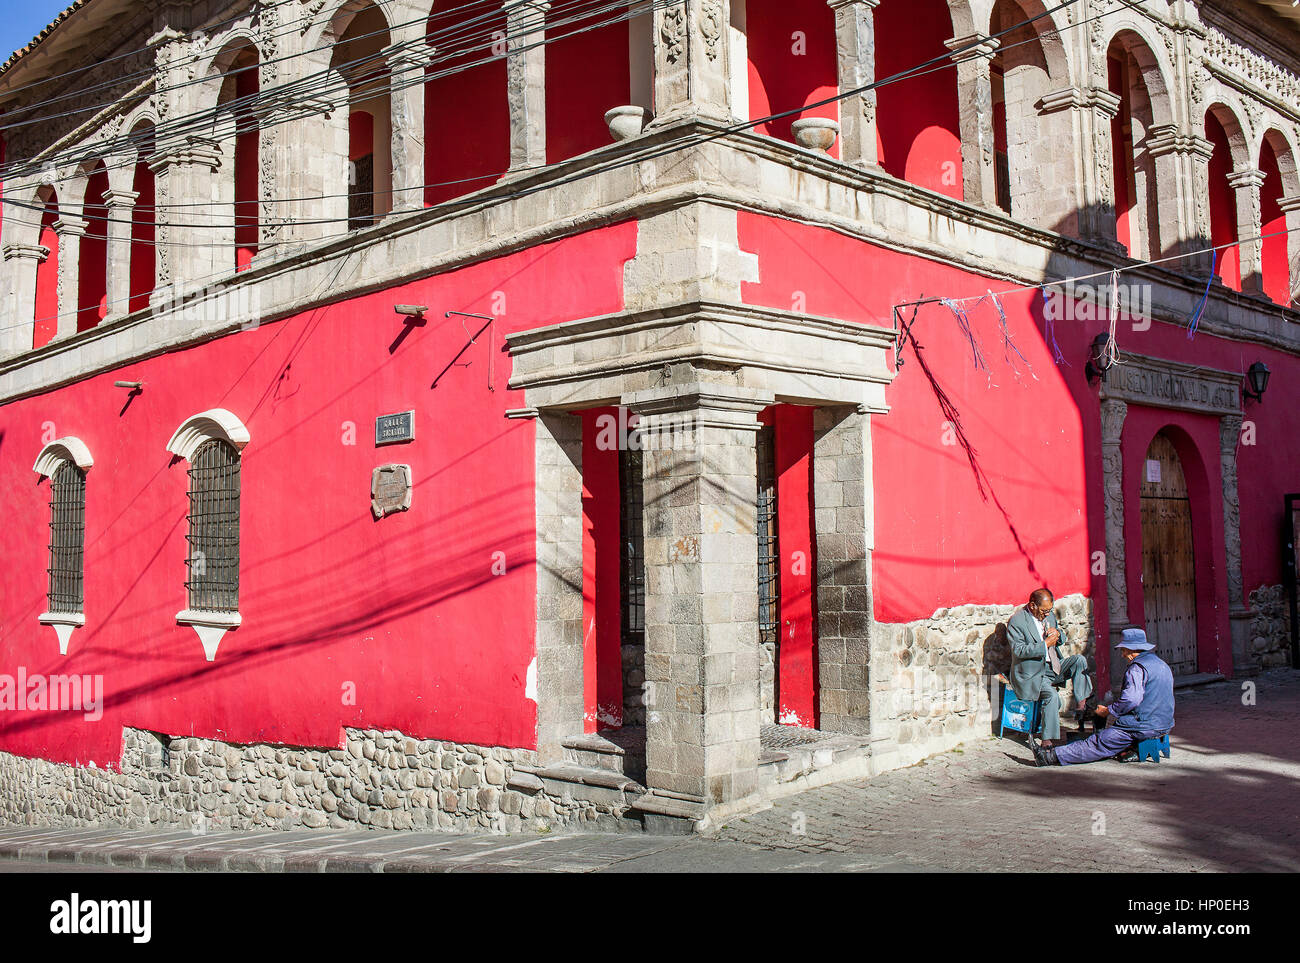 Facade of National Museum of Art, Casa de Francisco Tadeo Diez de Medina, La Paz, Bolivia Stock Photo